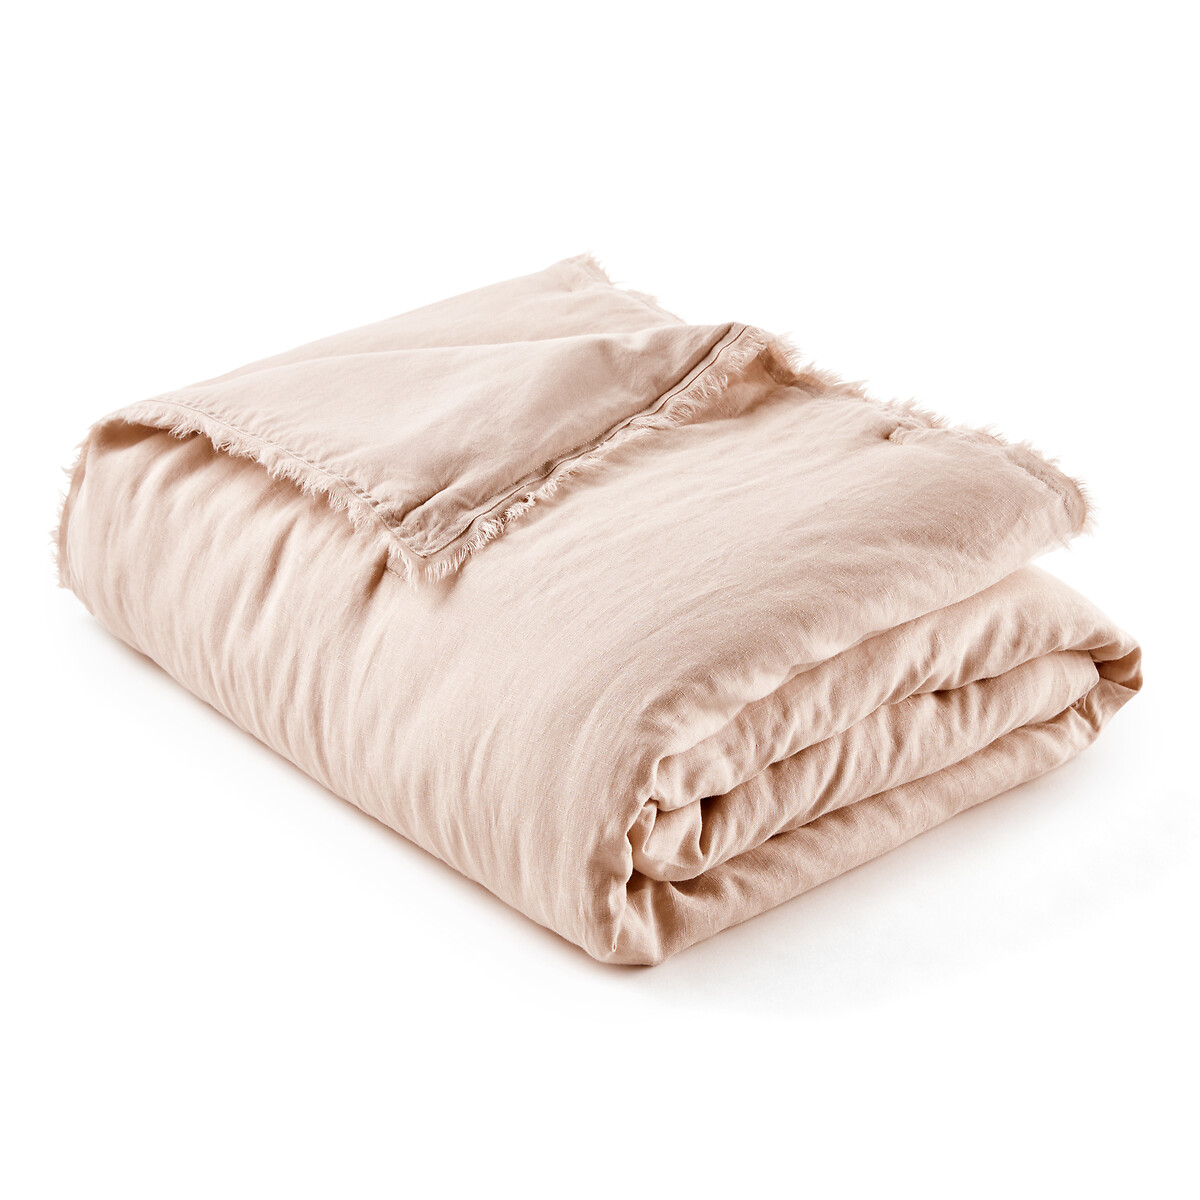 Одеяло LaRedoute Из льна и хлопка Linange 150 x 150 см бежевый, размер 150 x 150 см - фото 3